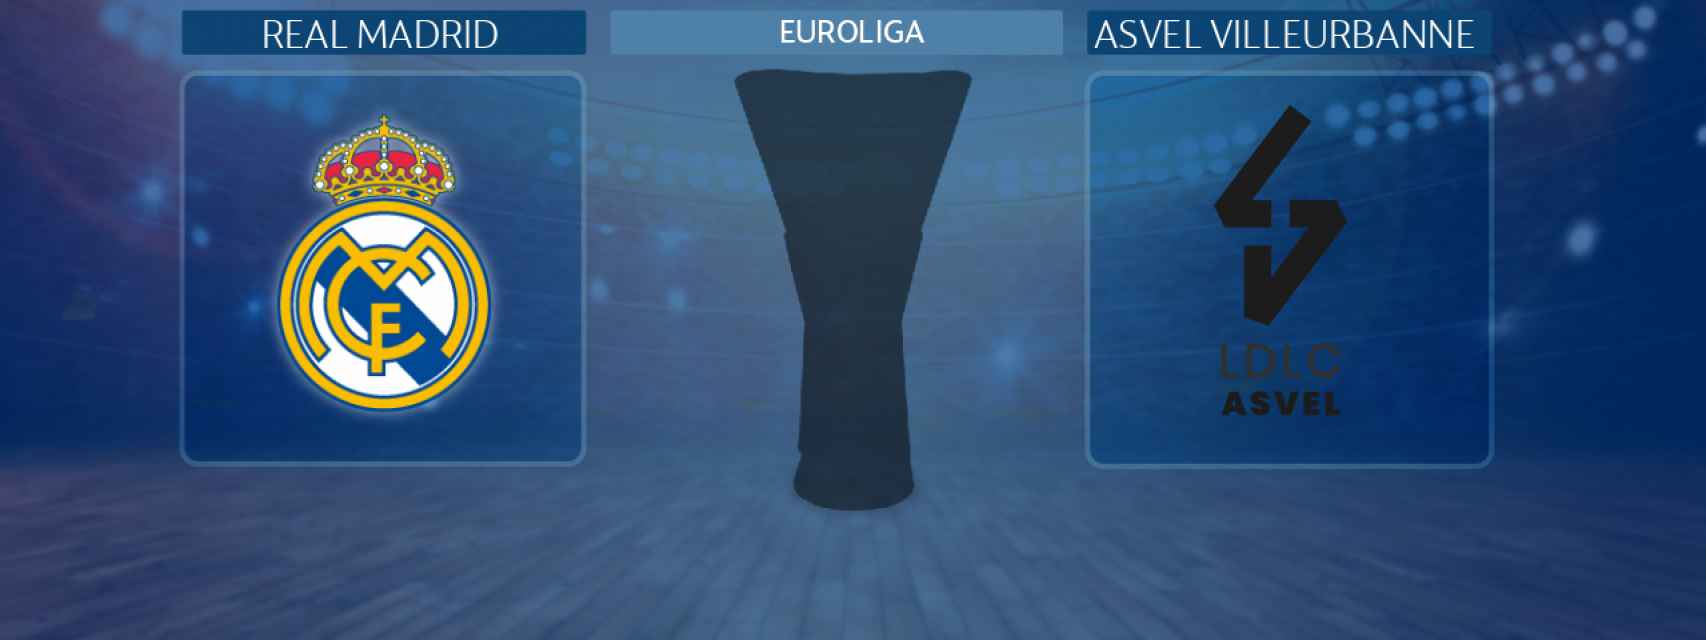 Real Madrid - Asvel Villeurbanne, partido de la Euroliga